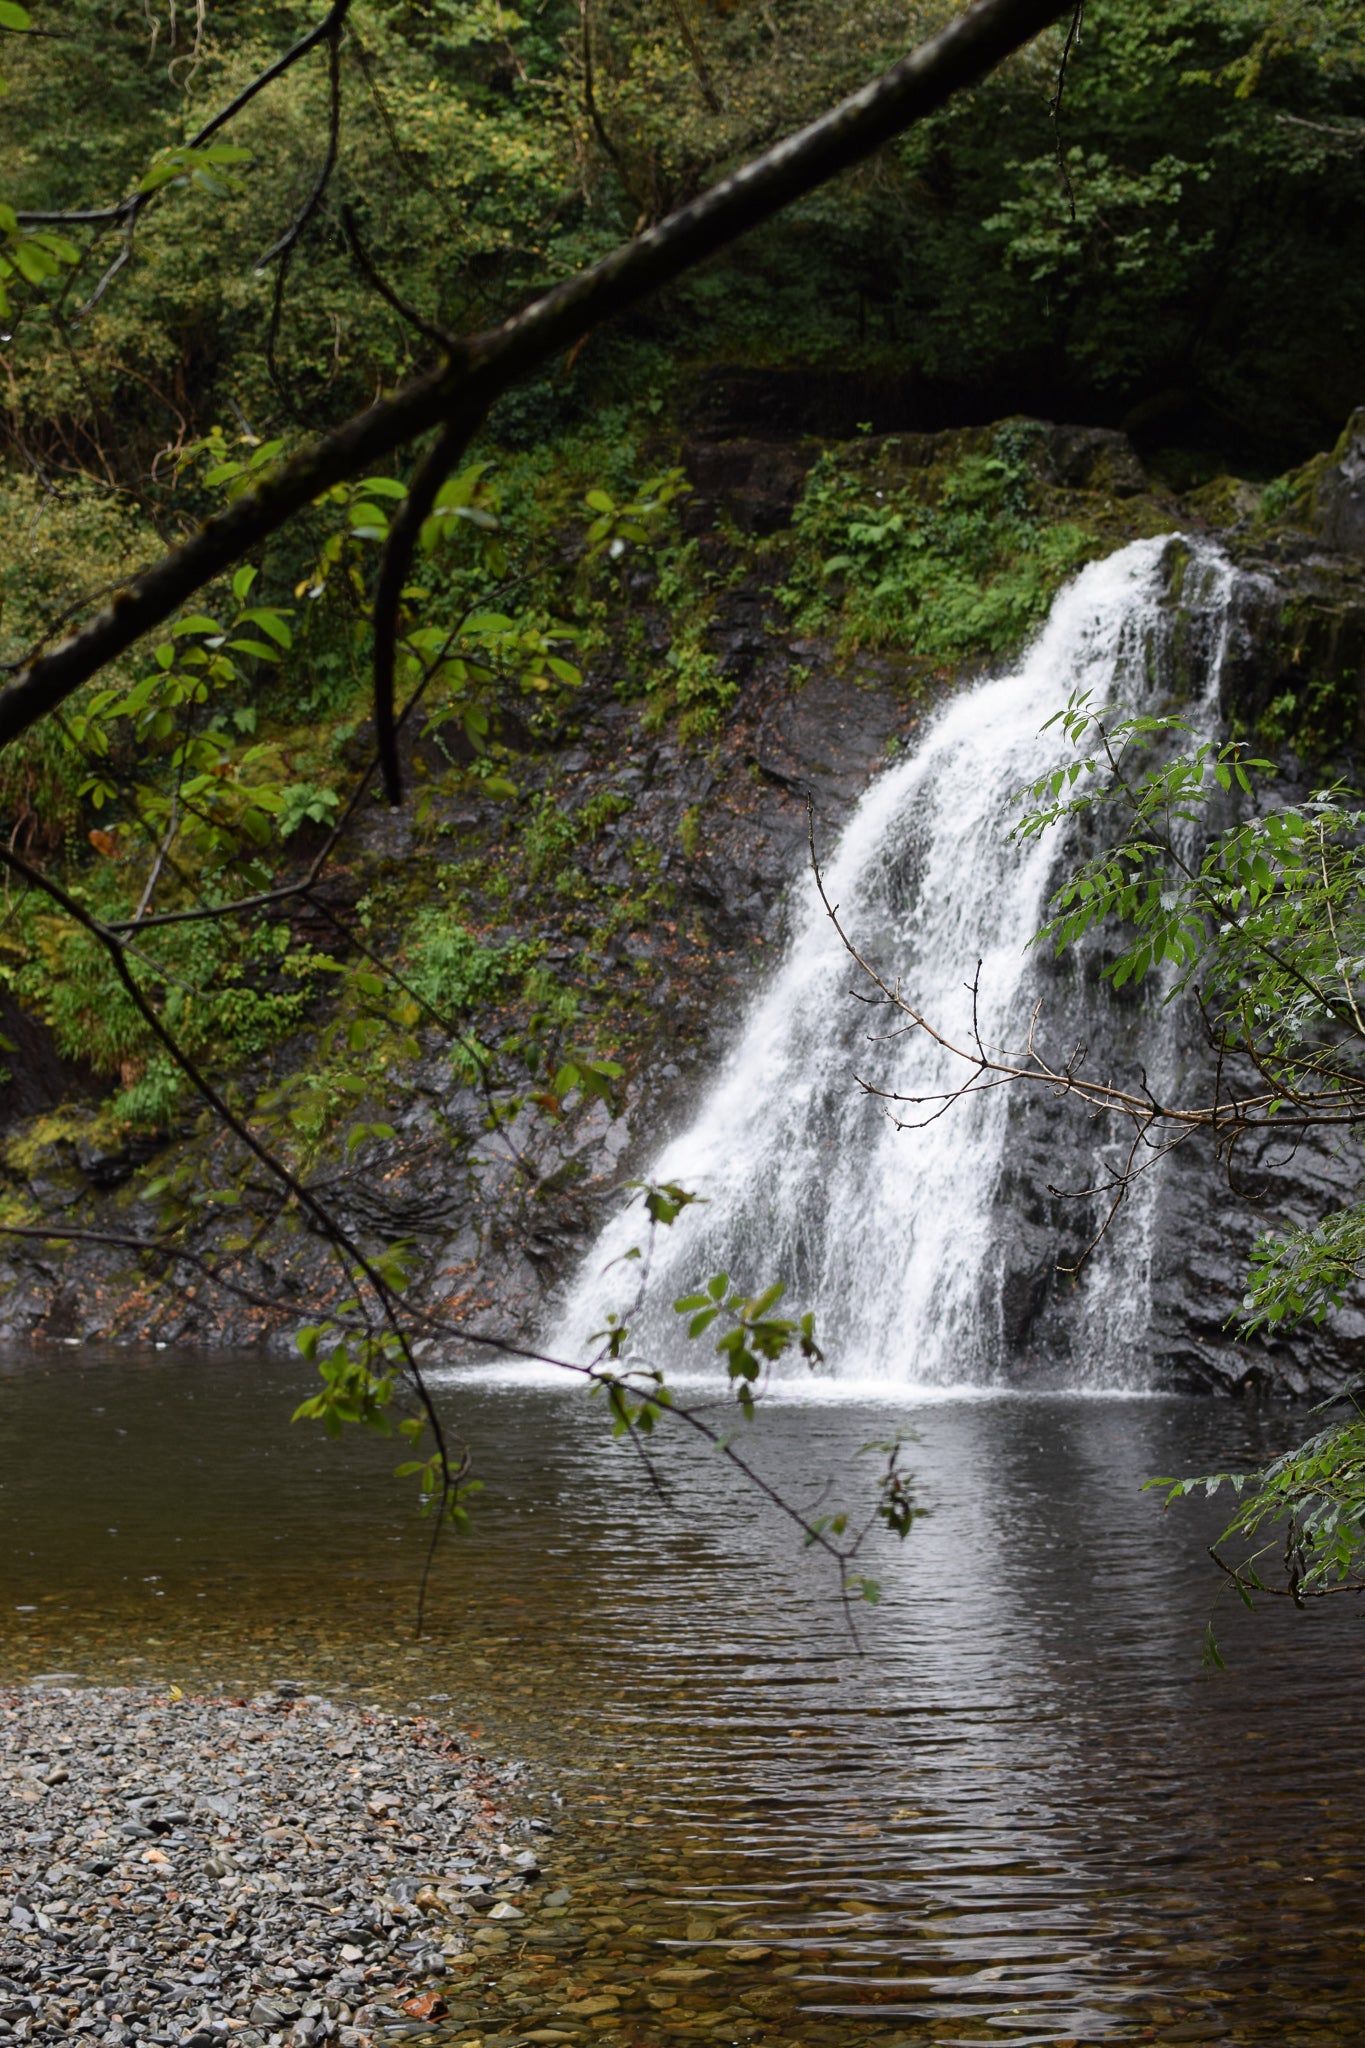 Rhaeadr Ddu, The Black Falls waterfall in Coed Felenrhyd, Snowdonia